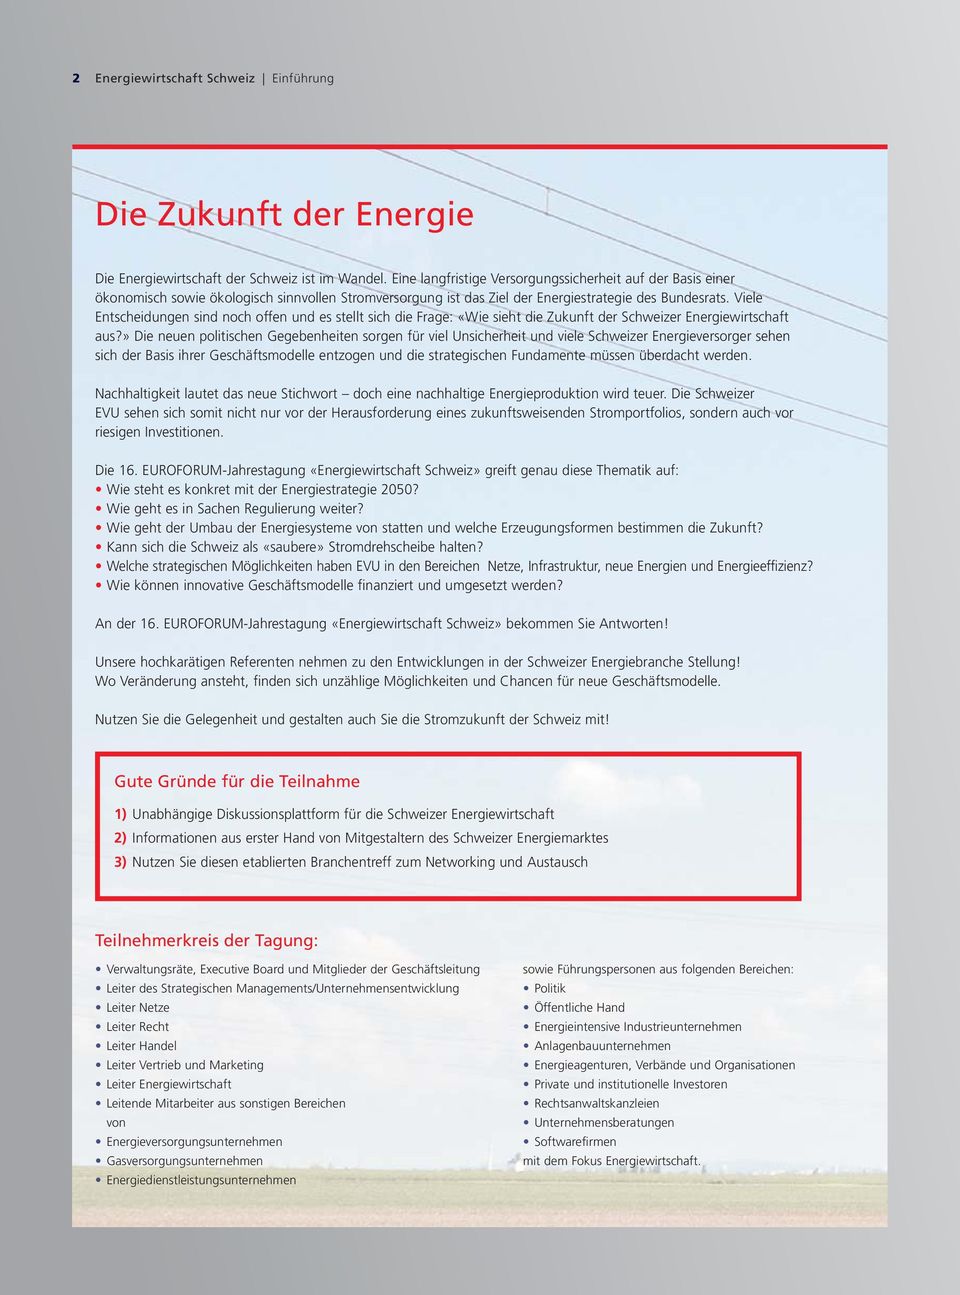 Viele Entscheidungen sind noch offen und es stellt sich die Frage: «Wie sieht die Zukunft der Schweizer Energiewirtschaft aus?